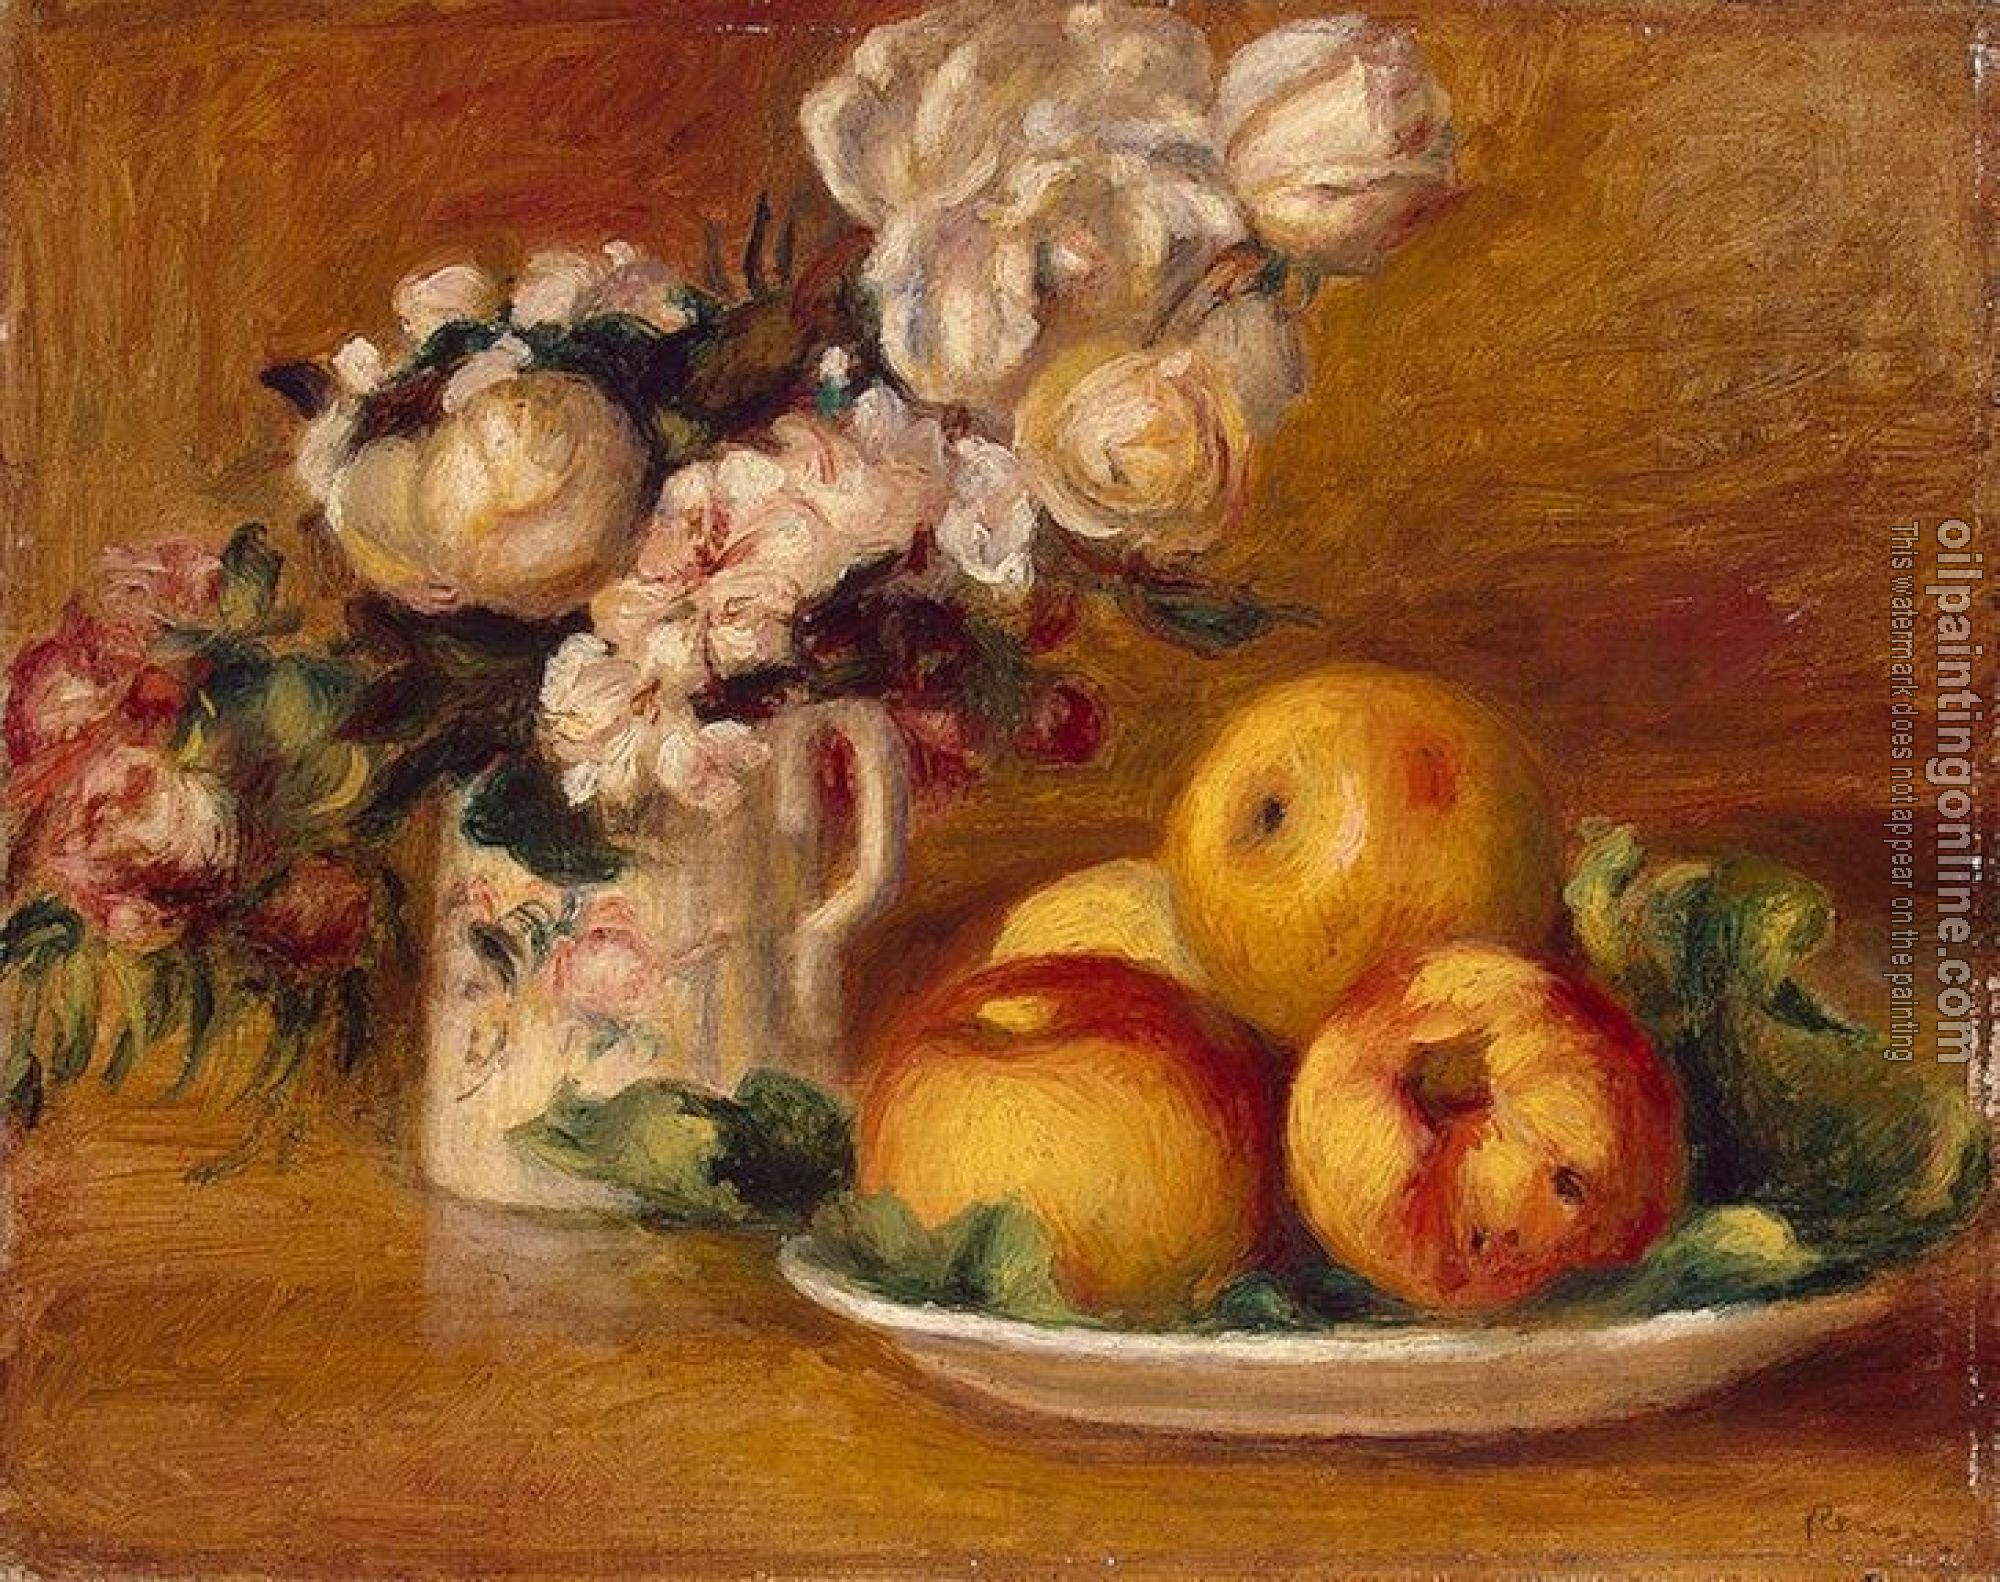 Renoir, Pierre Auguste - Apples and Flowers